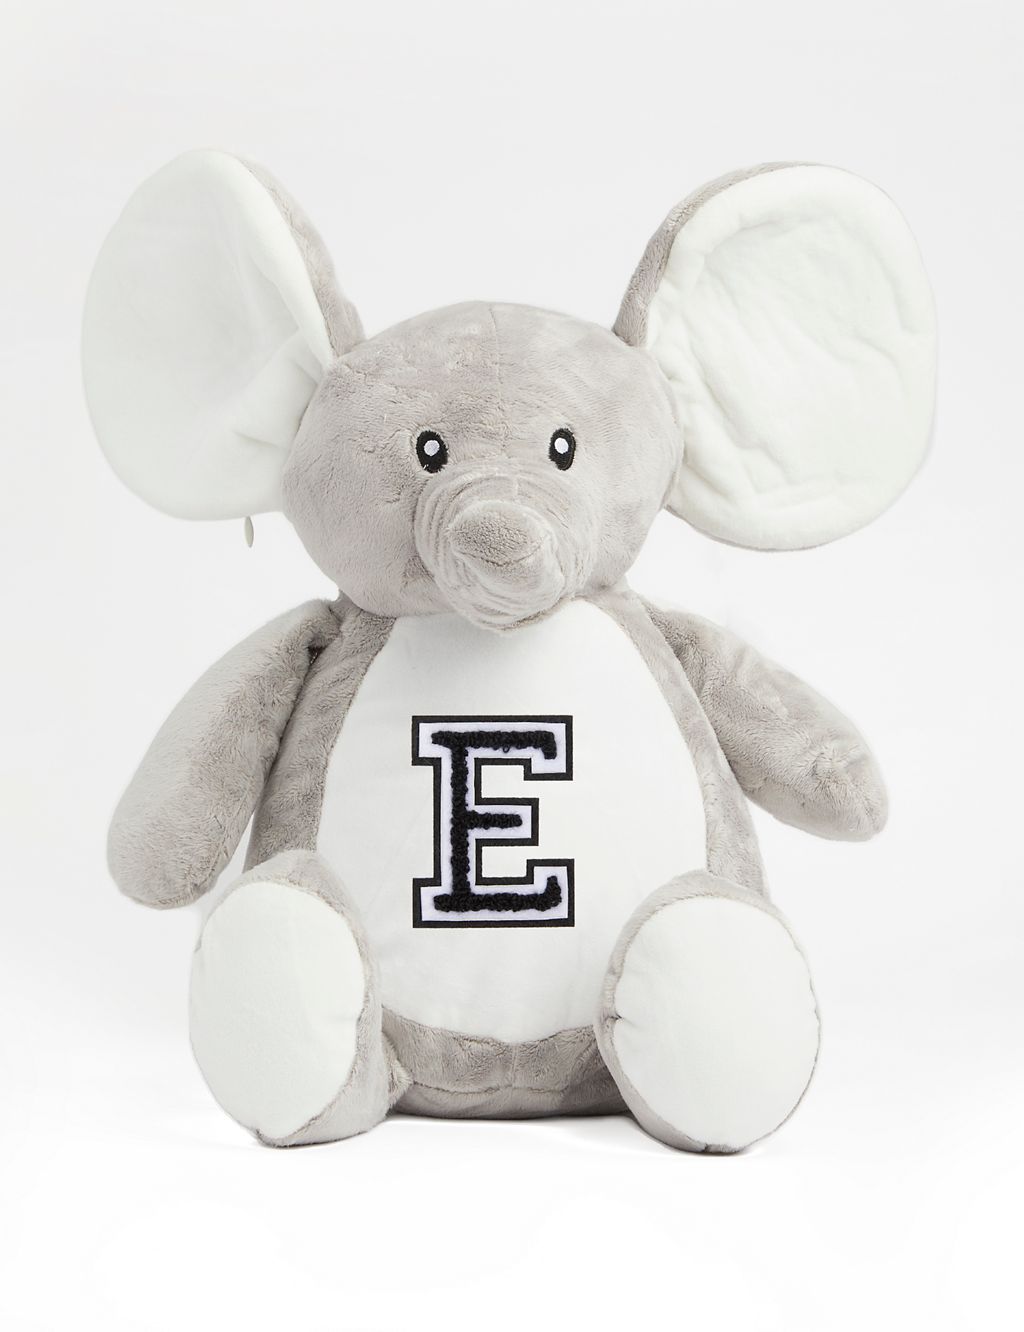 Personalised Soft Plush Elephant 3 of 3